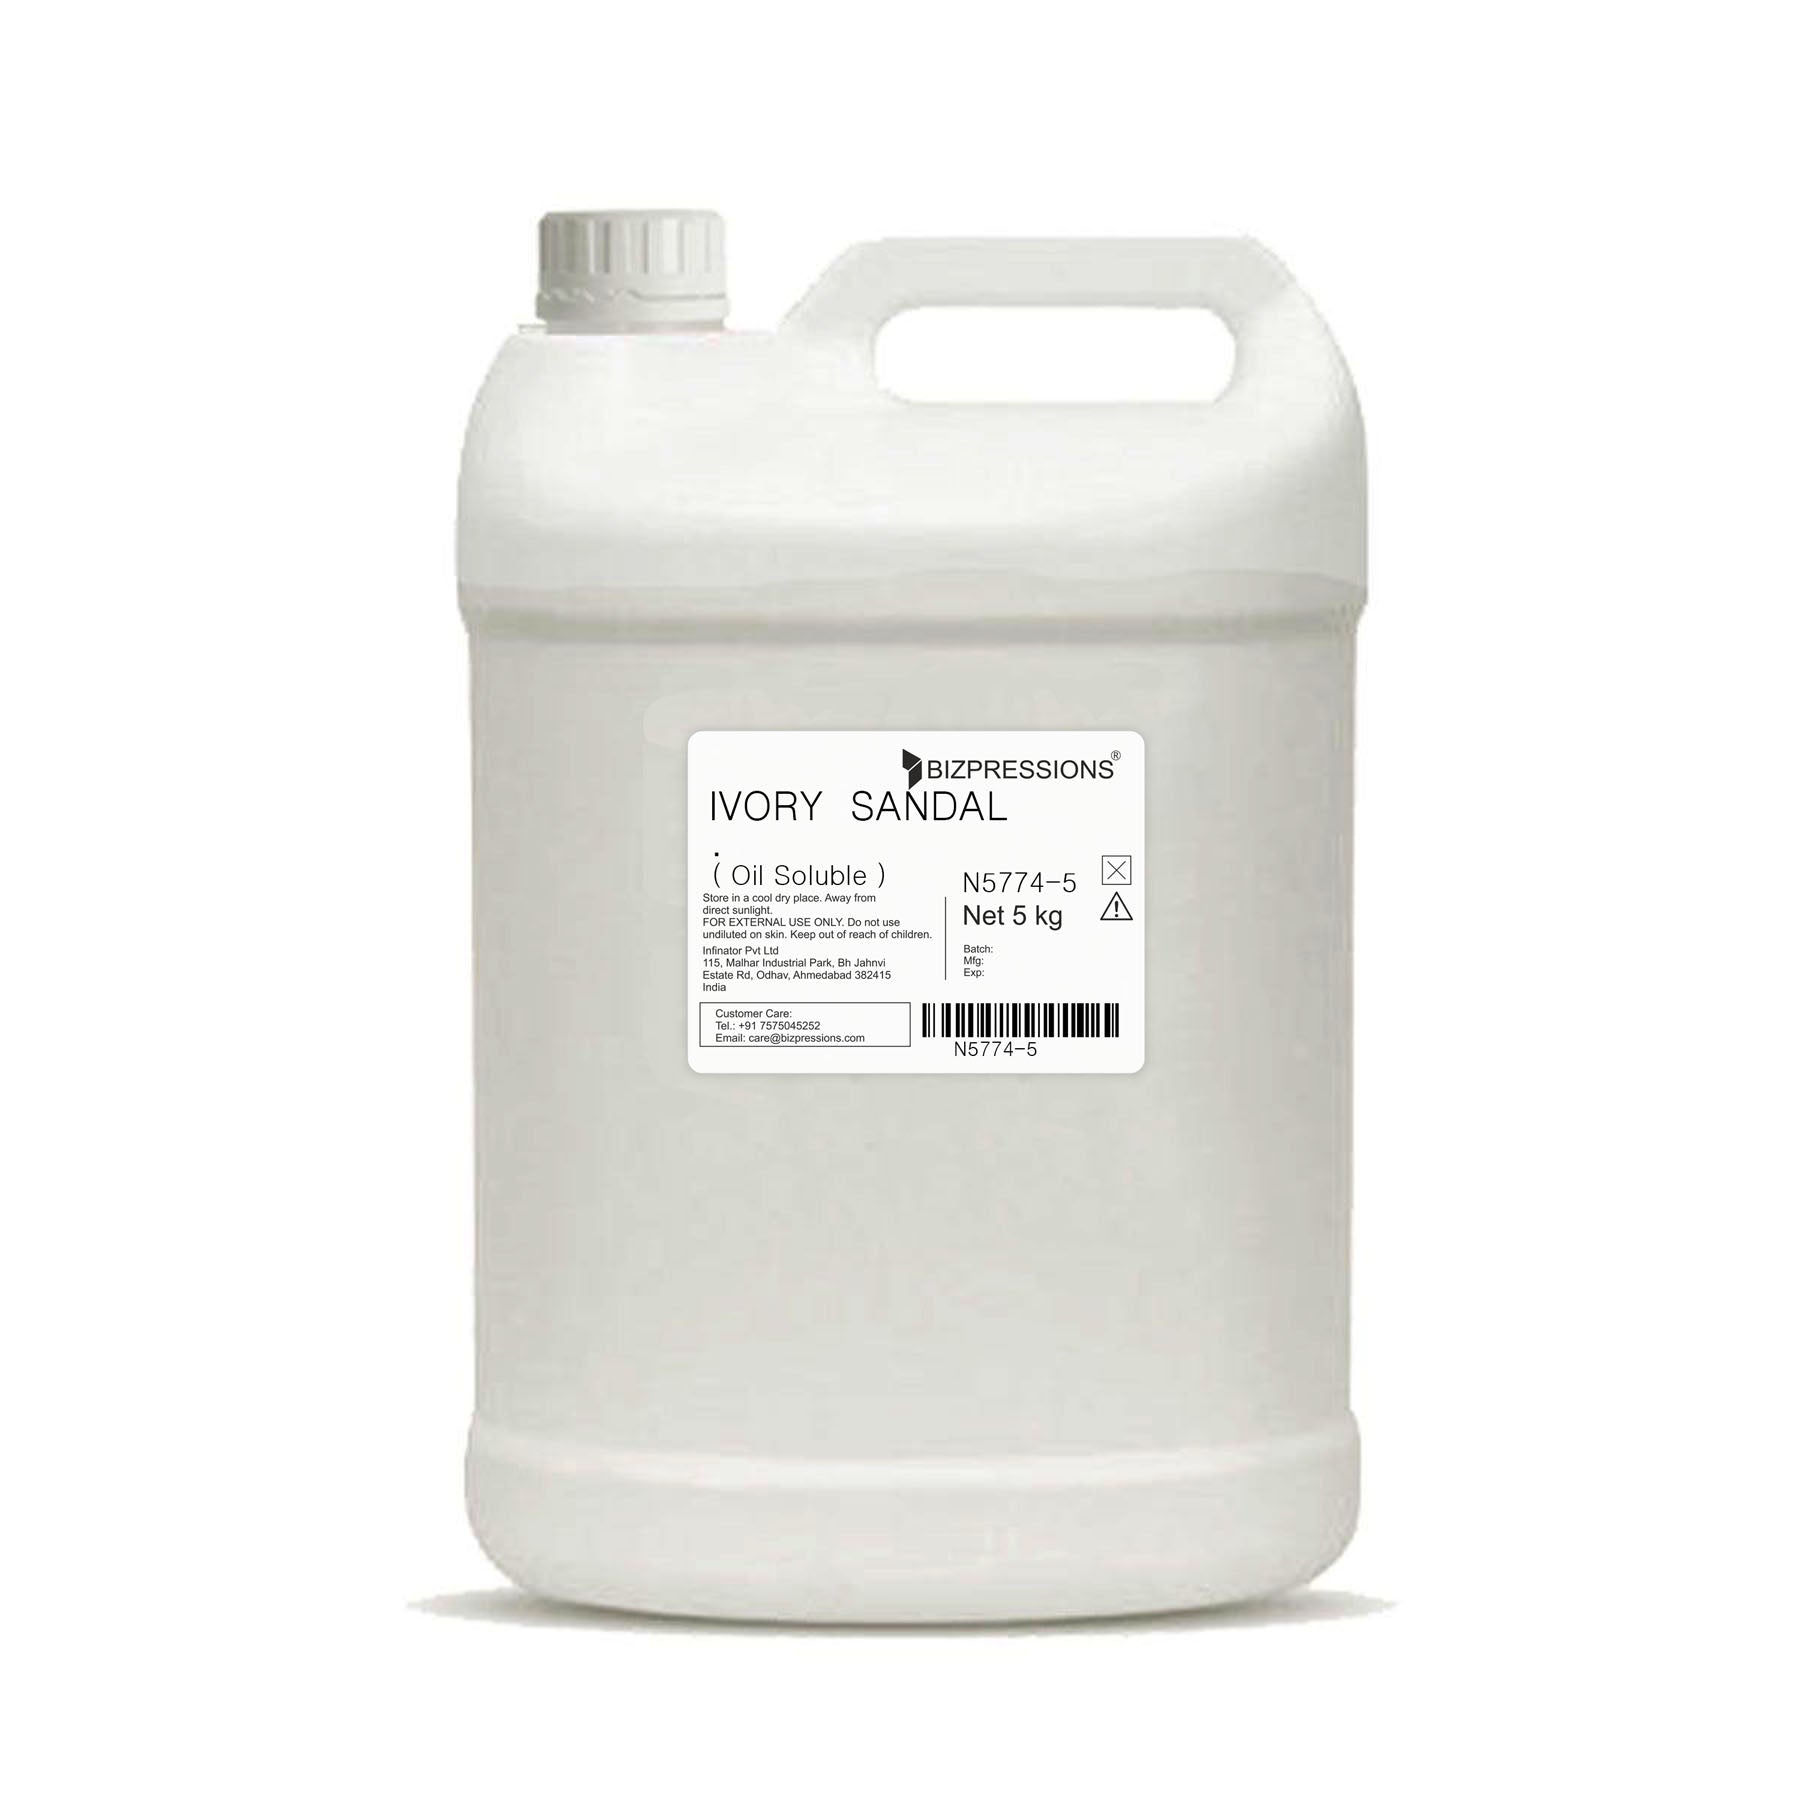 IVORY SANDAL - Fragrance ( Oil Soluble ) - 5 kg